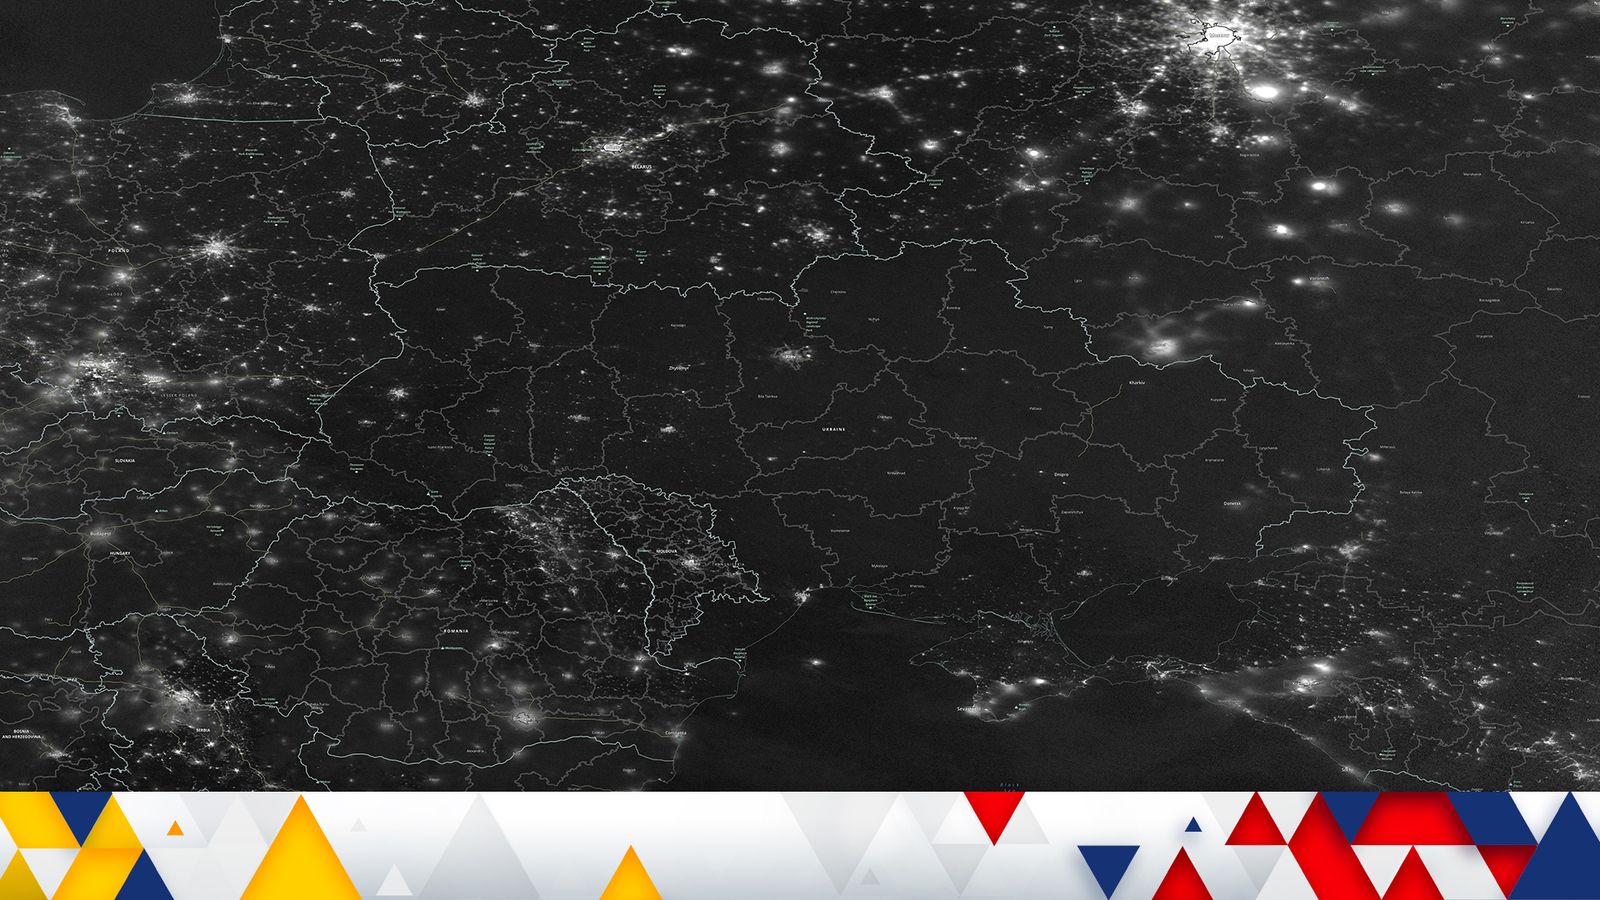 Une superbe image satellite révèle l’étendue de la pénurie d’énergie en Ukraine après les frappes de missiles russes |  nouvelles du monde